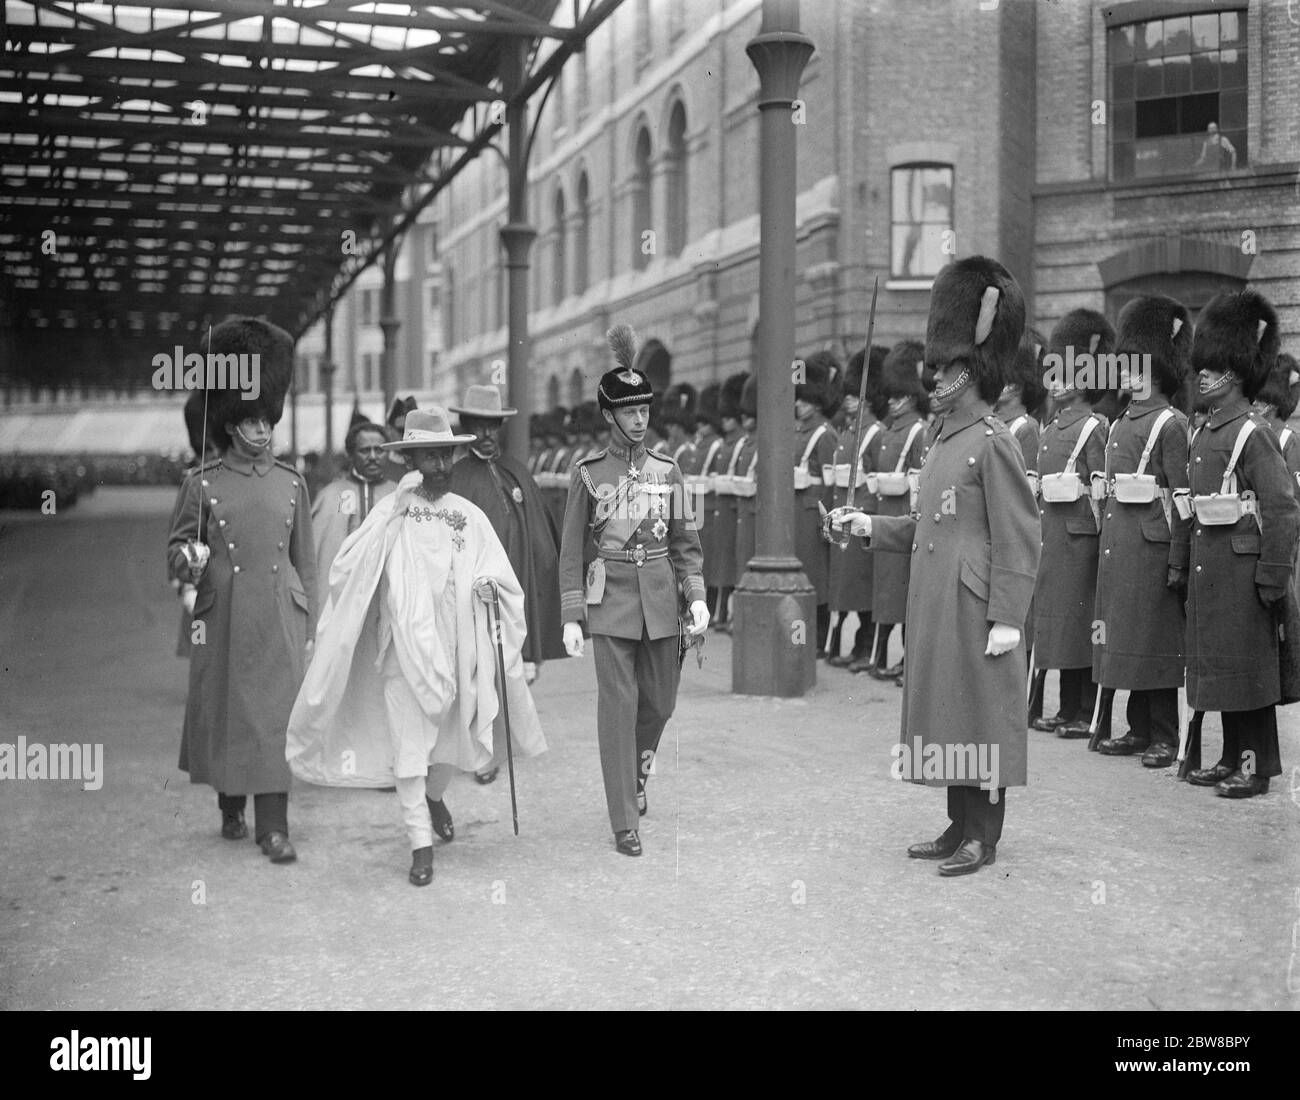 L'arrivo del reggente abissiniano . RAS Taari , erede apparente al trono di Abissinia , arrivò a Londra come ospite del governo britannico . RAS Tafari e il duca di York ispezionano la guardia d'onore all'arrivo a Victoria . 7 luglio 1924 Foto Stock